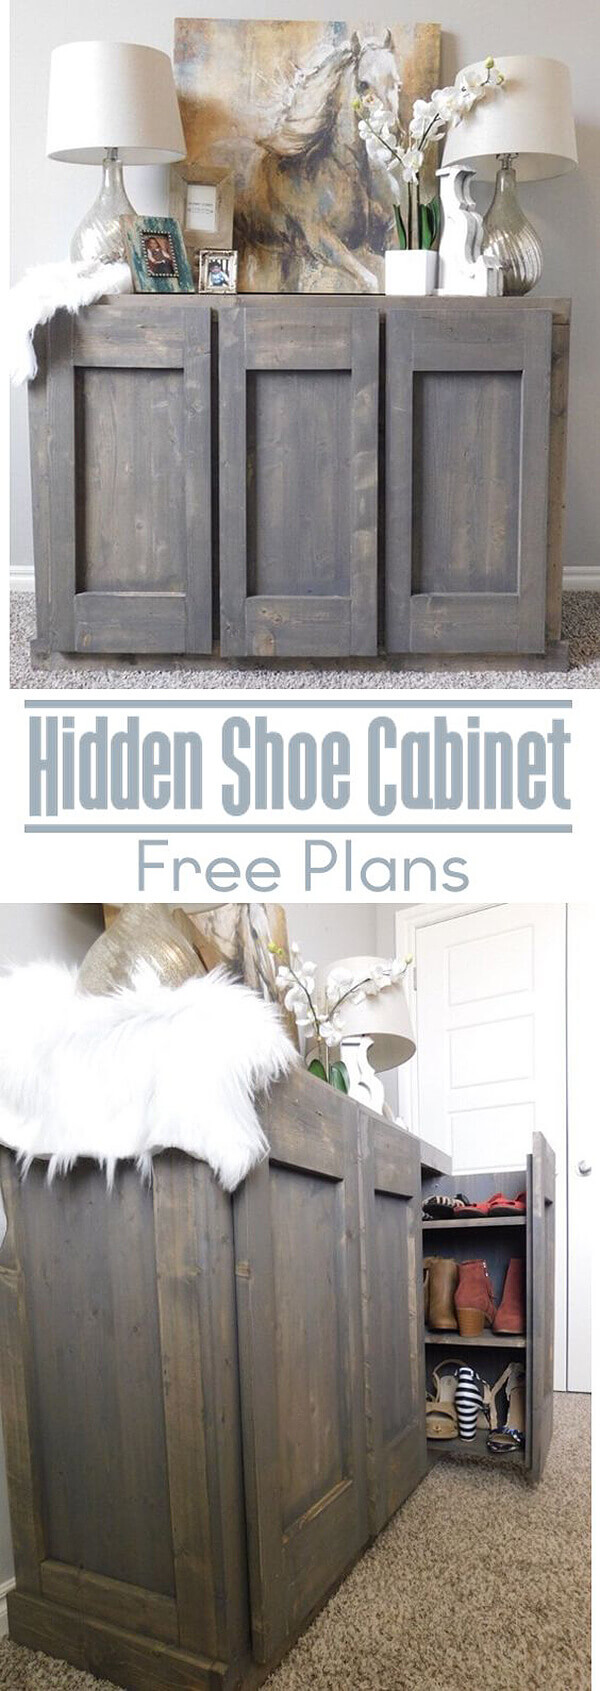 Cabinet With Hidden Shoe Rack